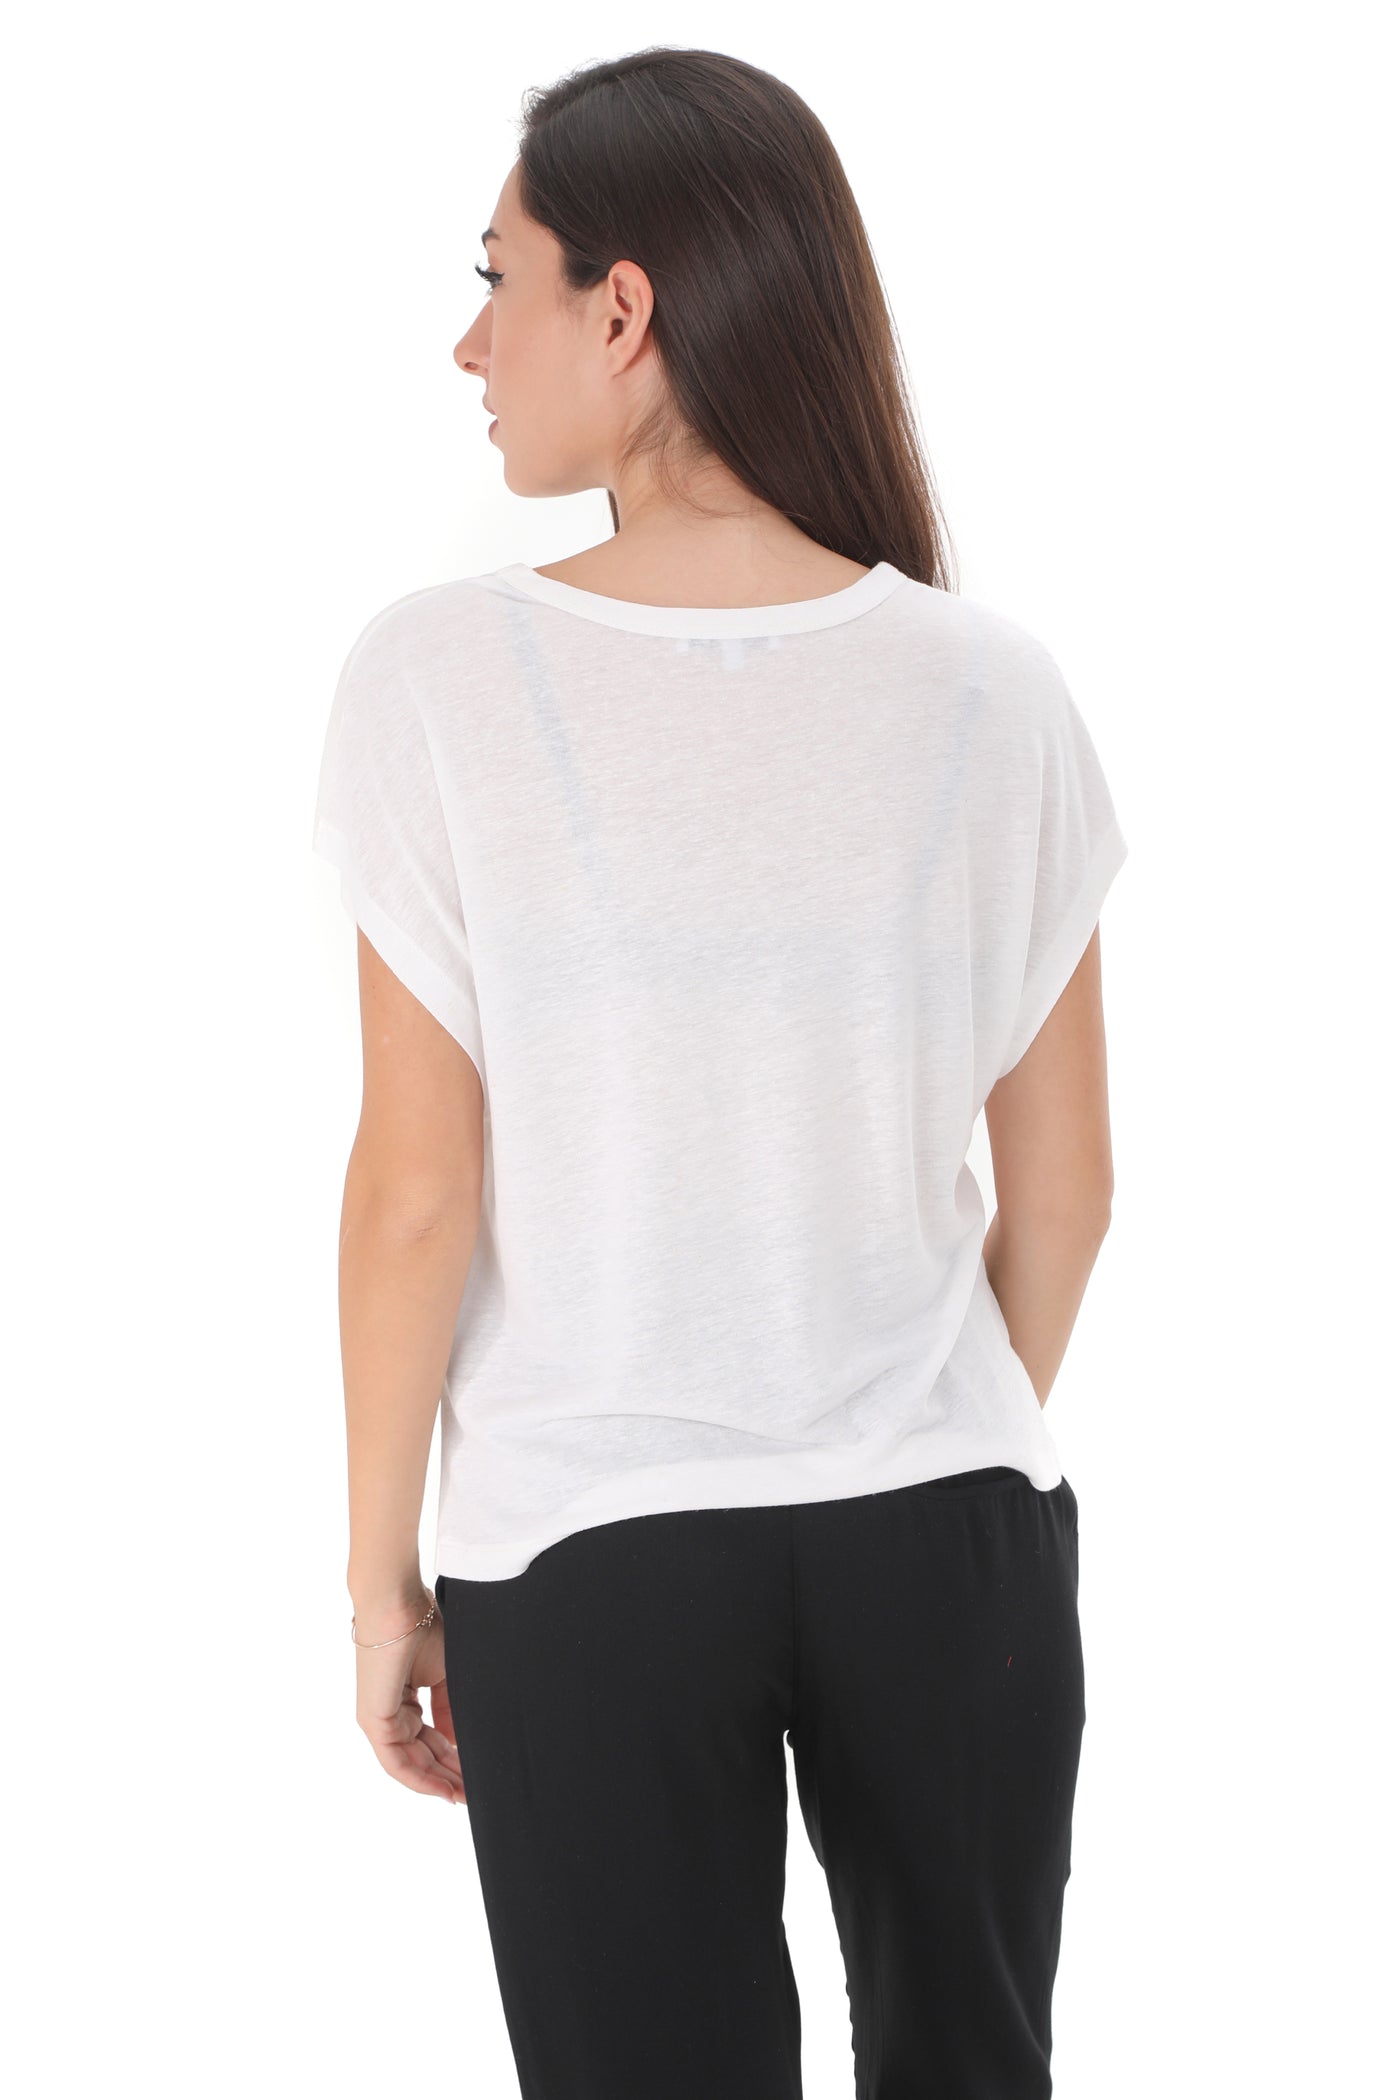 Chassca Sleeveless Viscose & Linen T-Shirt